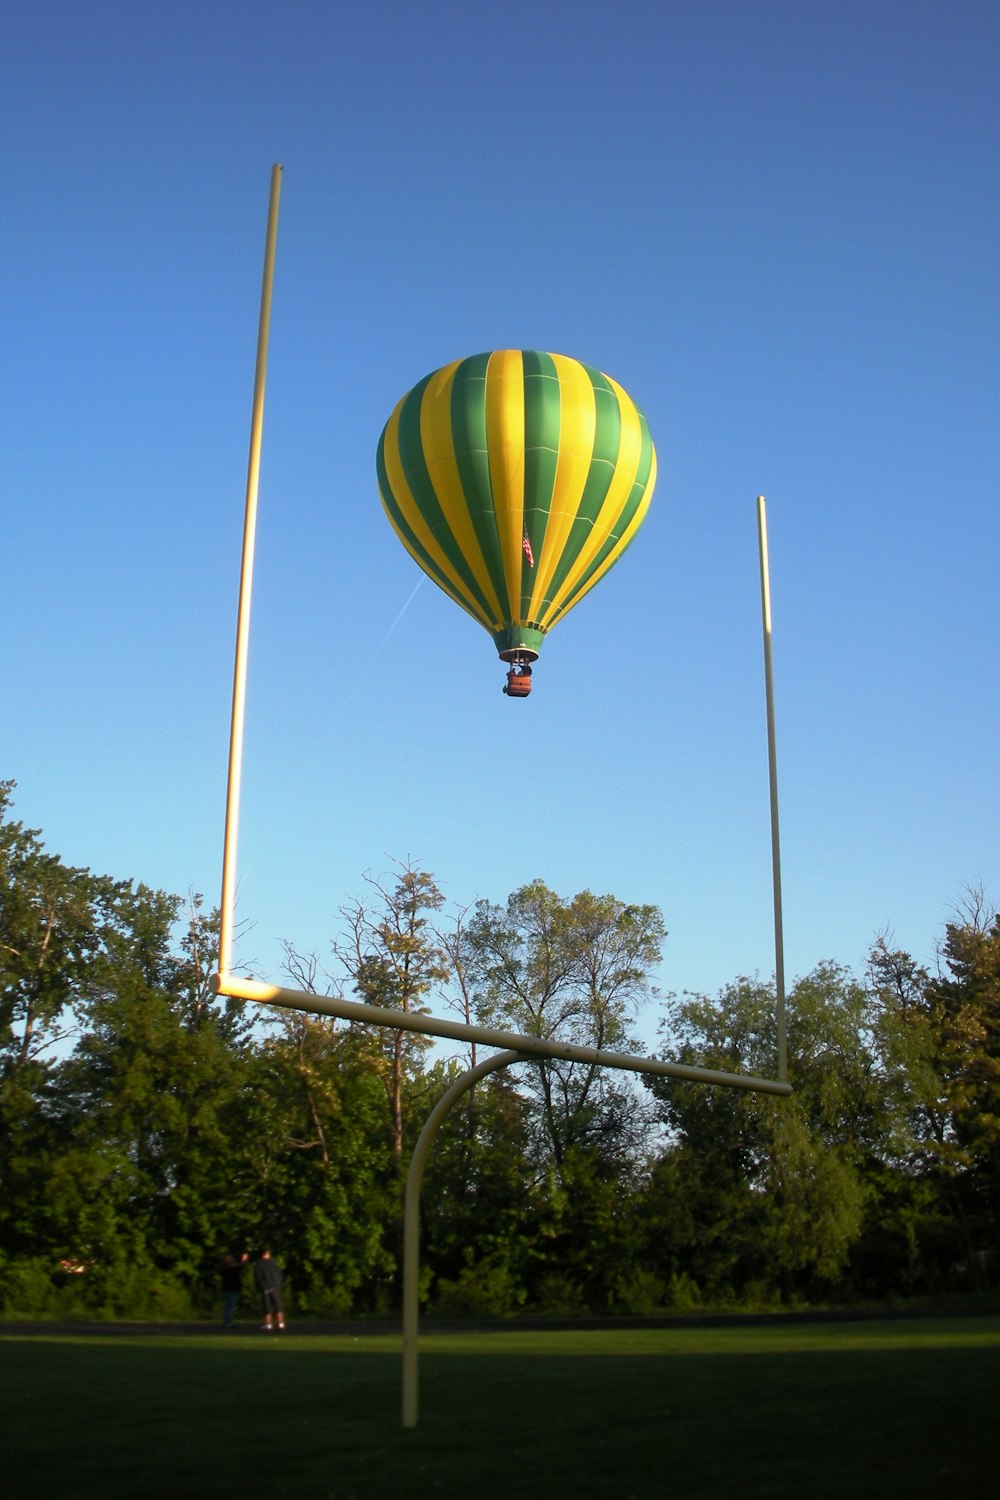 globo aerostático verde, amarillo y azul en el aire durante el día